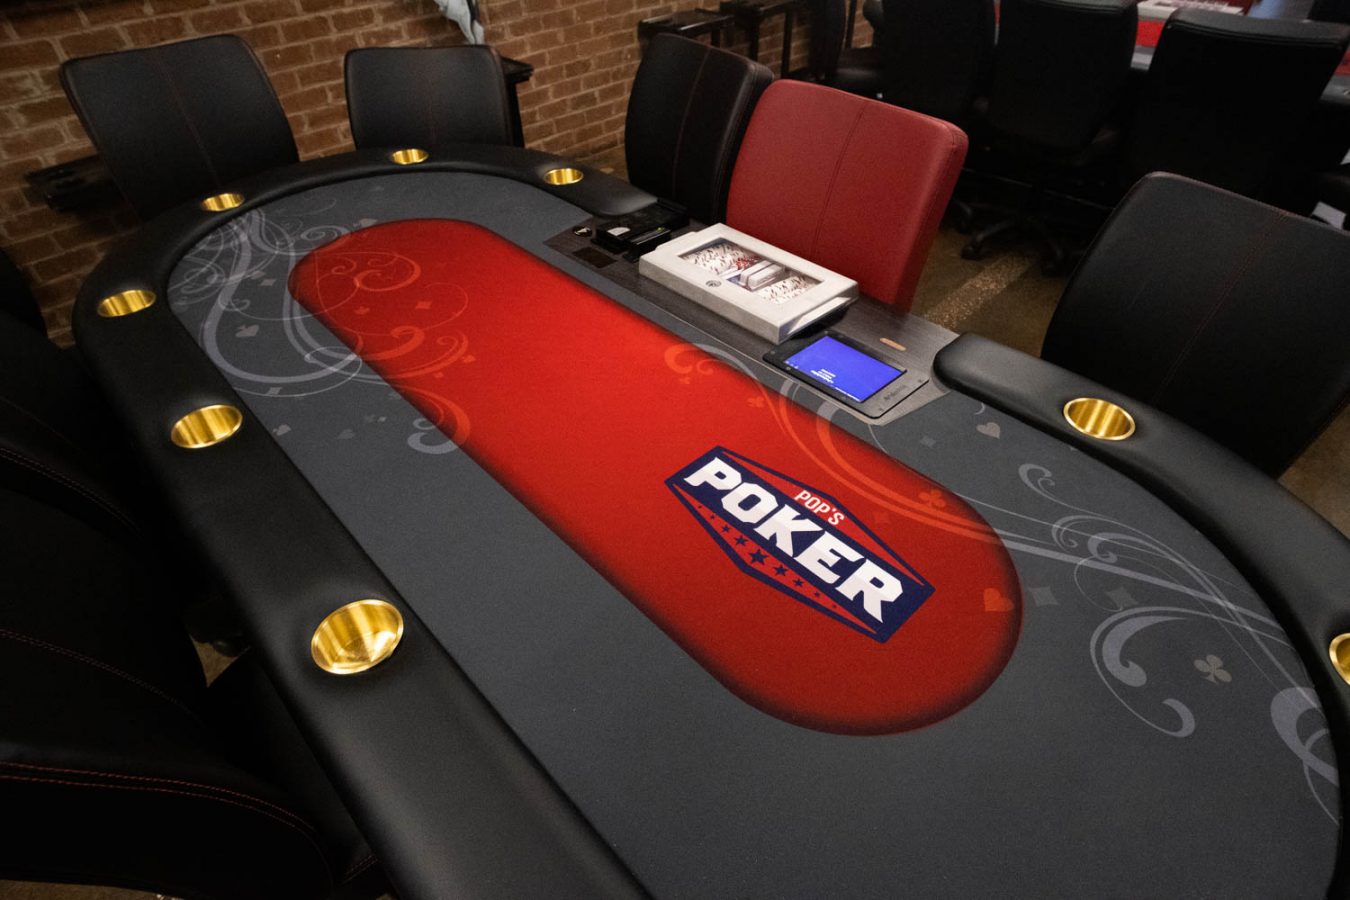 Virginia tidak memiliki kamar poker berlisensi. Seorang ketua dewan perjudian negara bagian tetap membukanya.